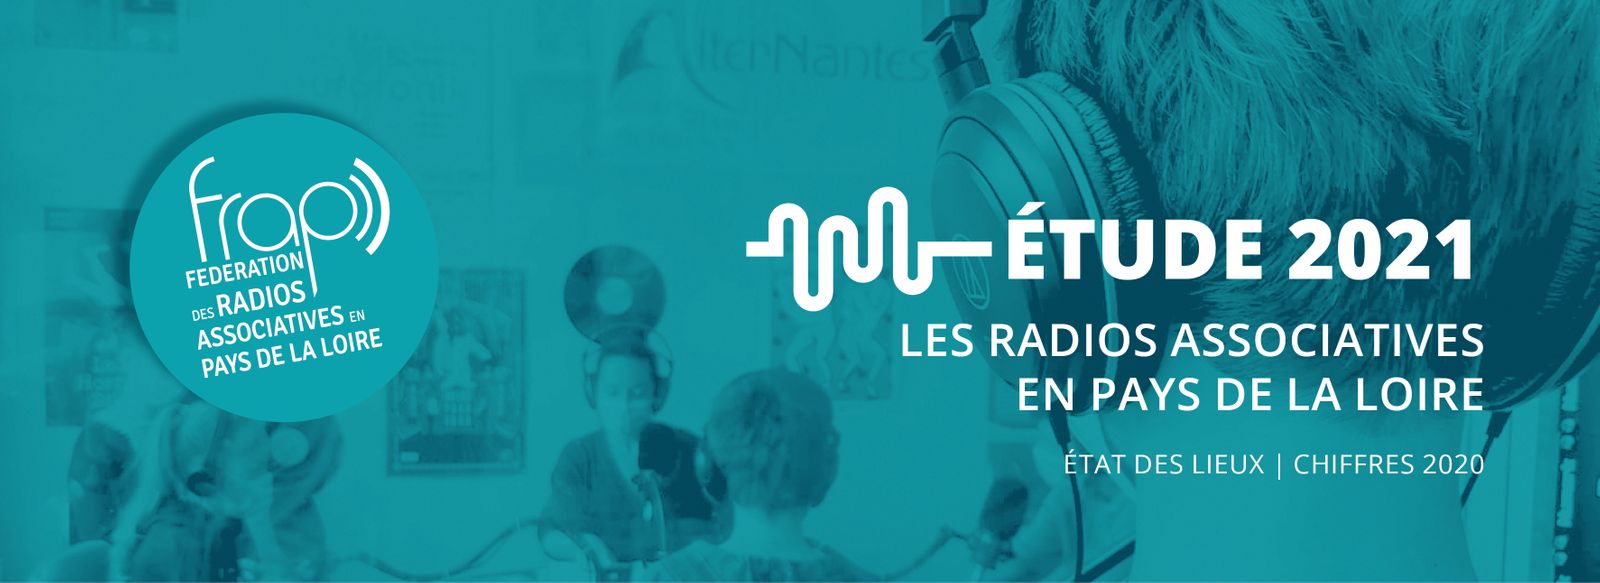 La FRAP publie l’étude 2021 des radios associatives en Pays de la Loire